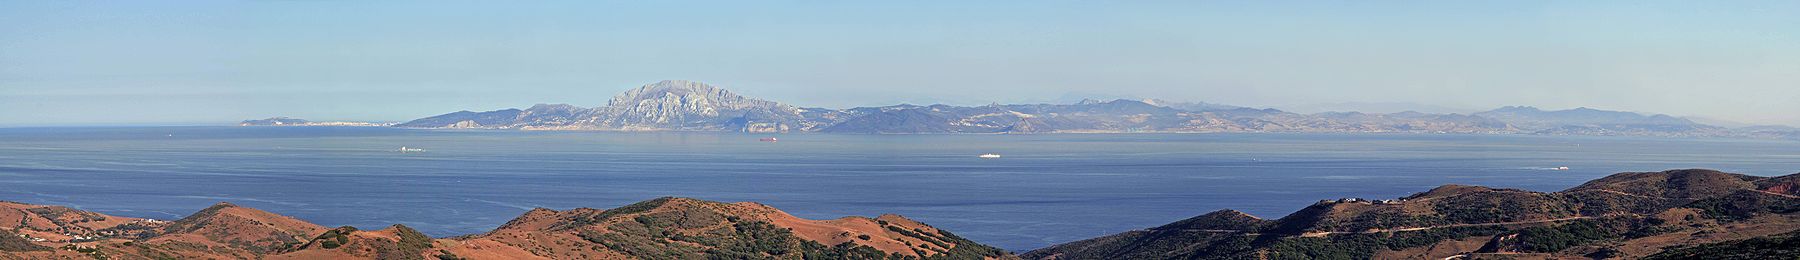 Blick vom Mirador del Estrecho nach SüdenIm Osten liegt Sabta/Ceuta (hier links) und im Westen Tandja/Tanger.